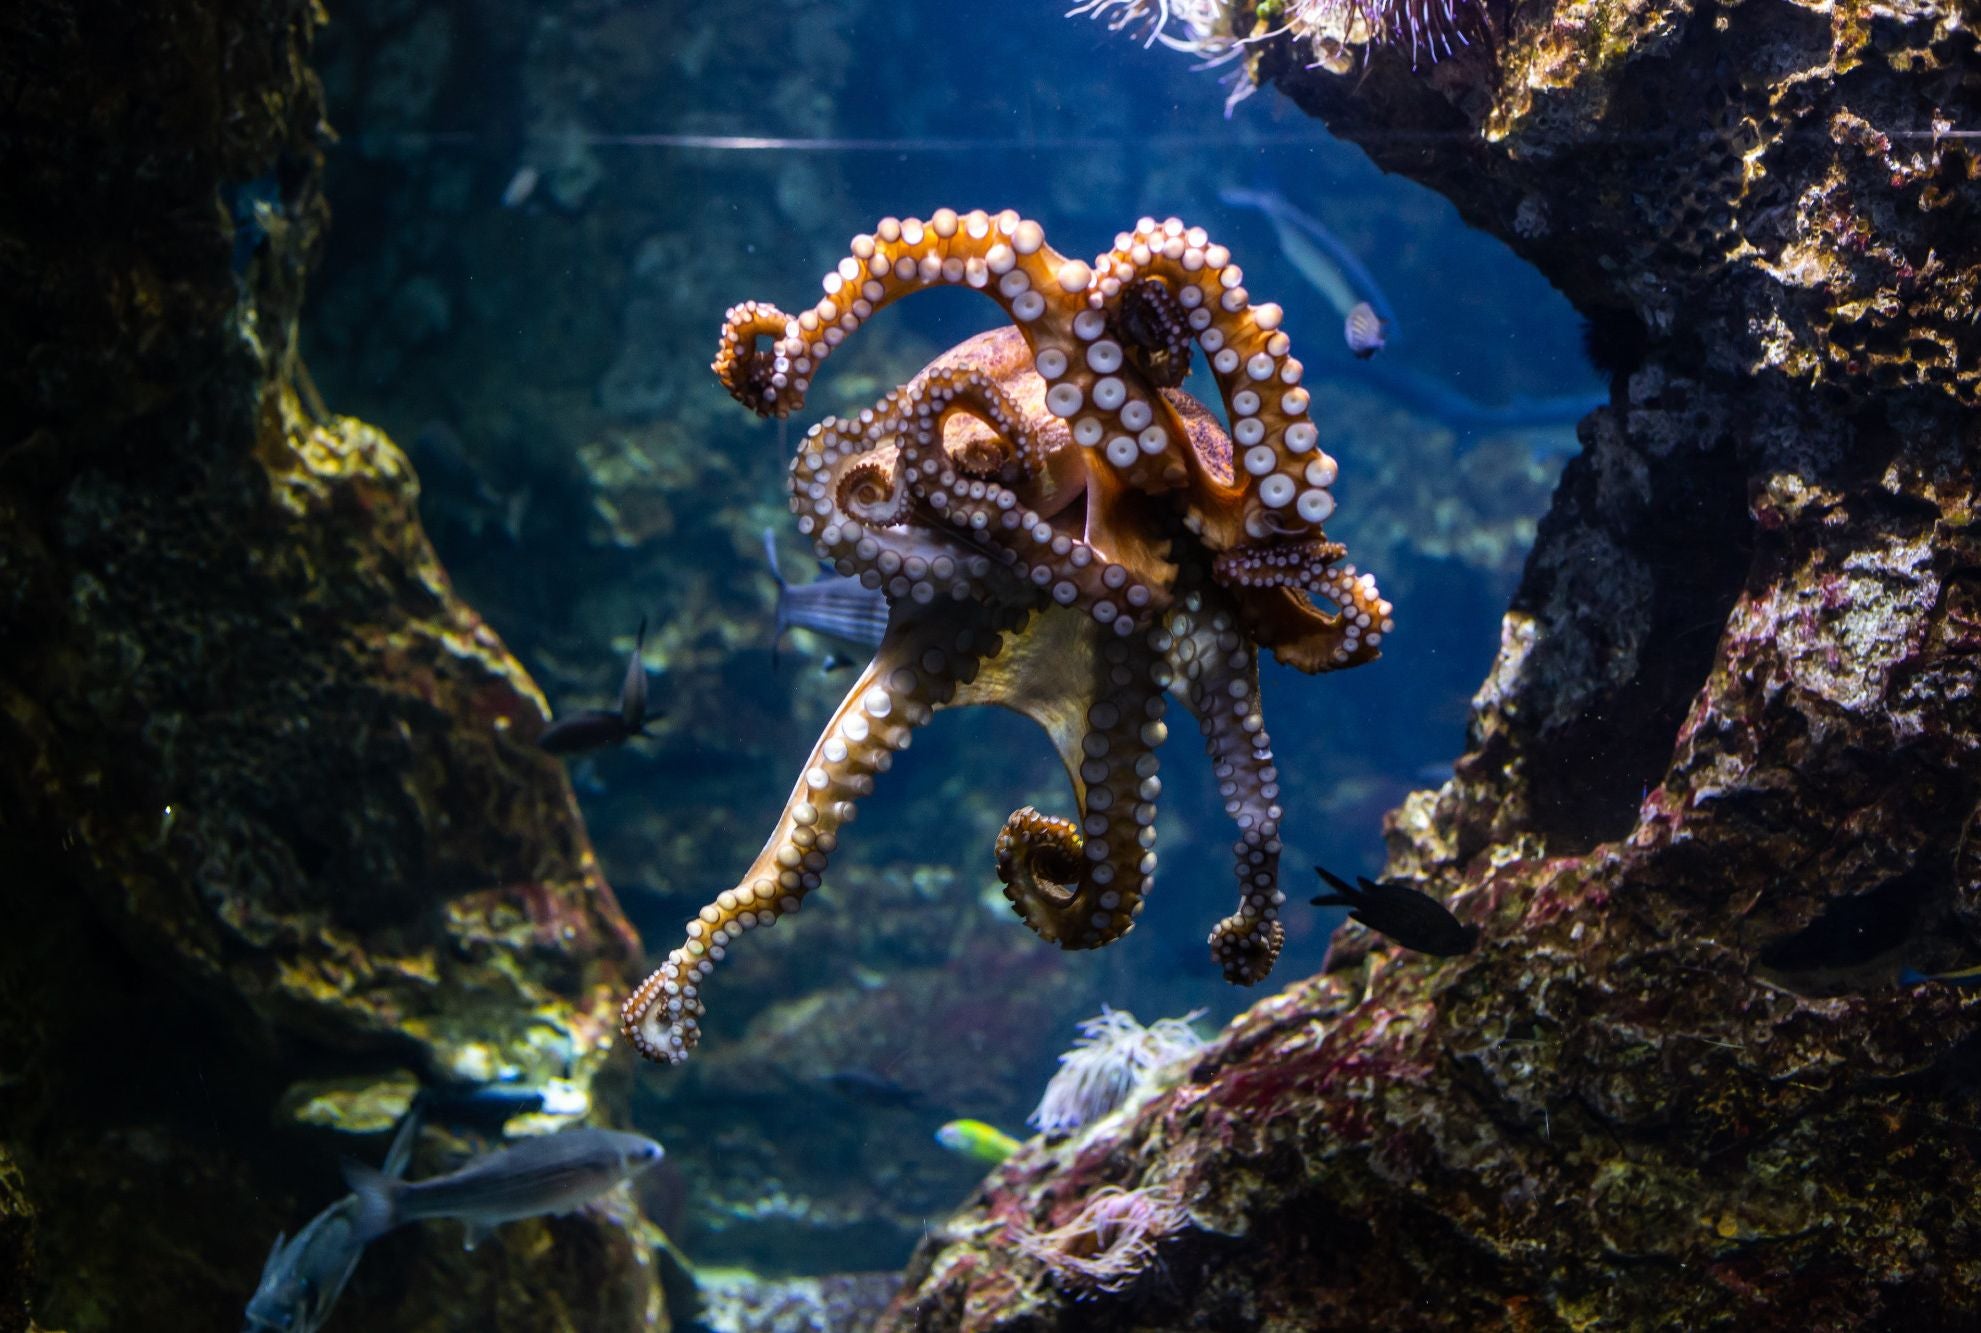 Octopus amazing life cycle